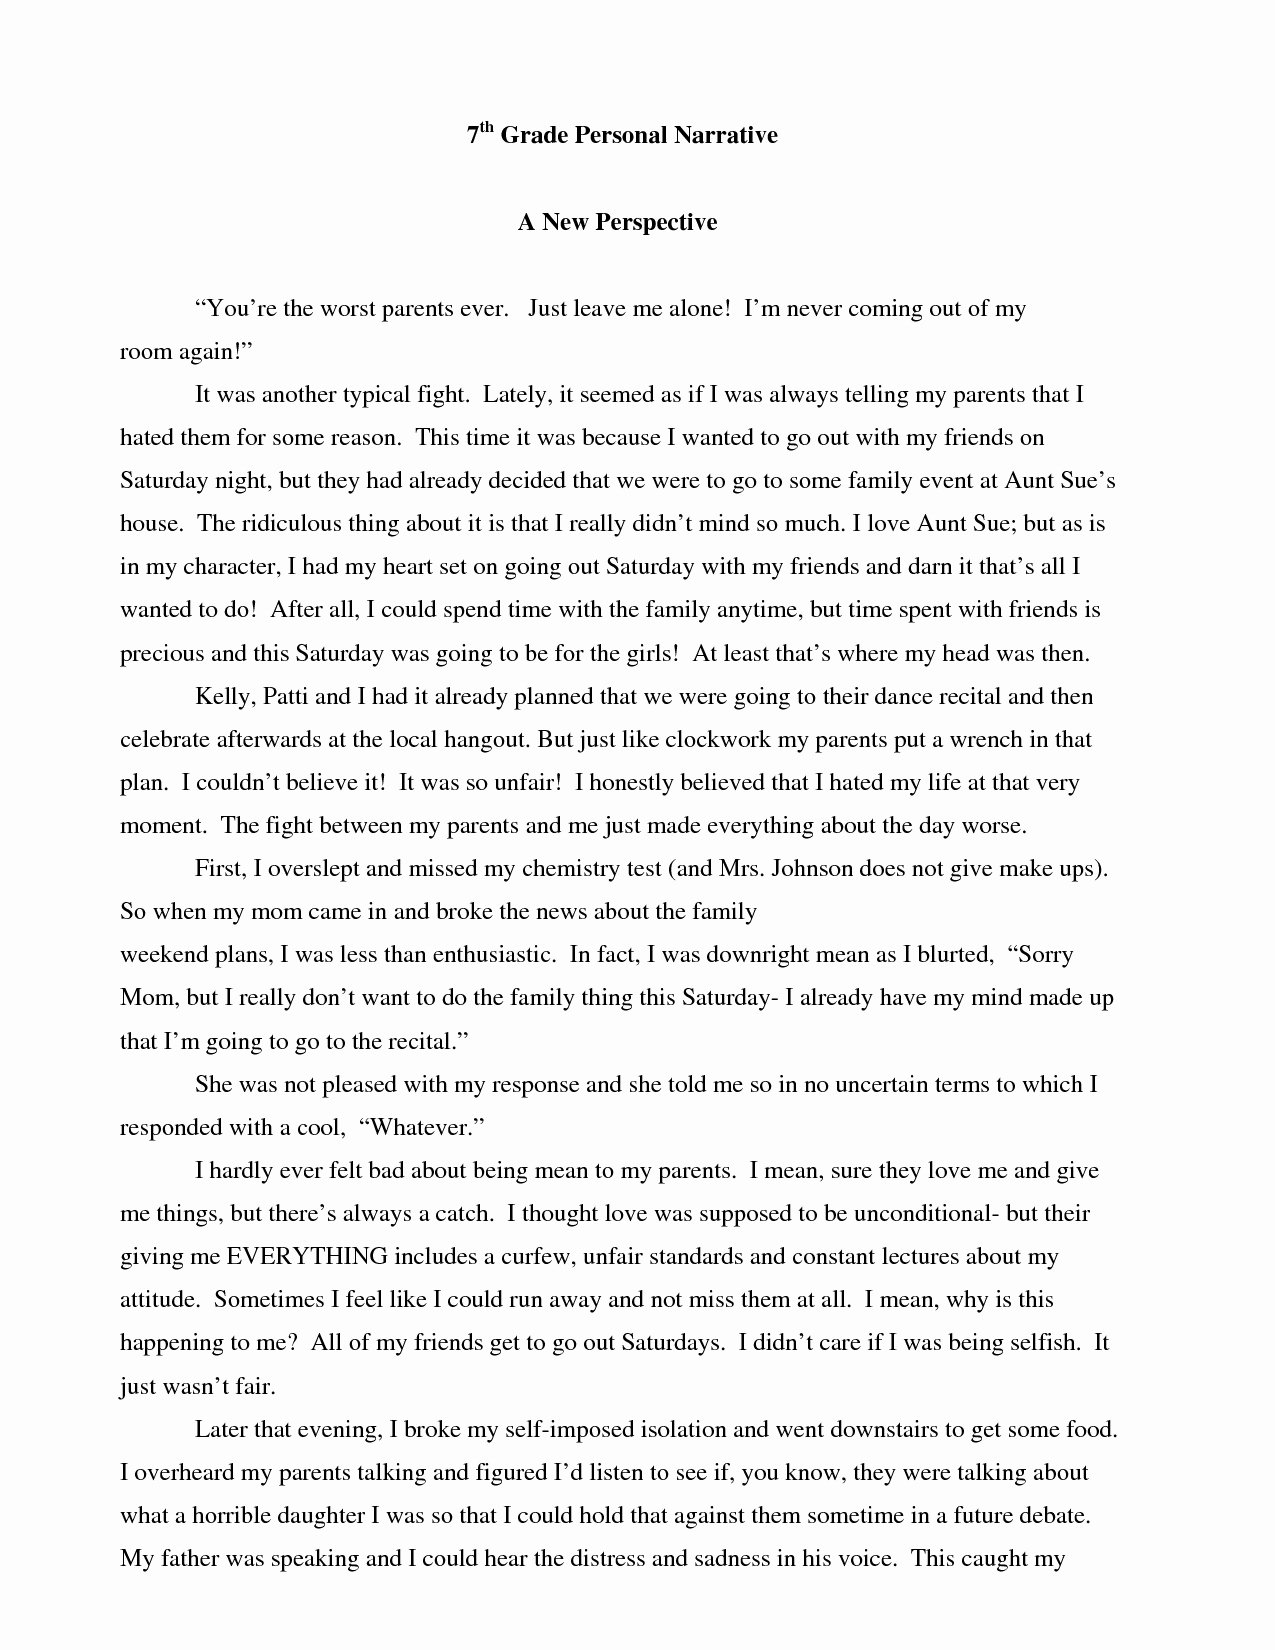 Personal Narrative High School Examples Awesome Personal Narrative Essay Examples for Middle School